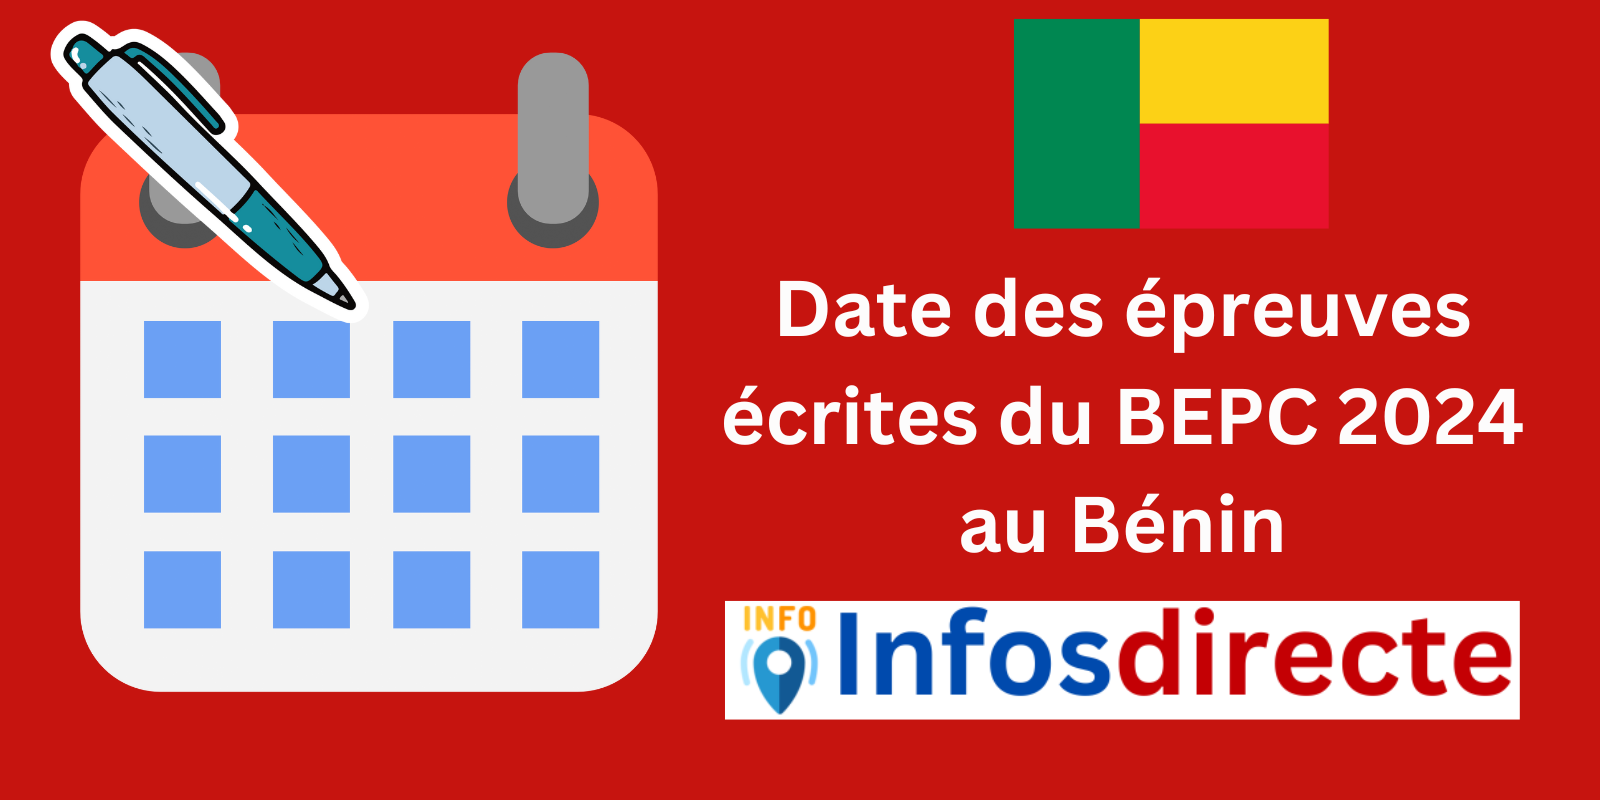 Date des épreuves écrites du BEPC 2024 au Bénin